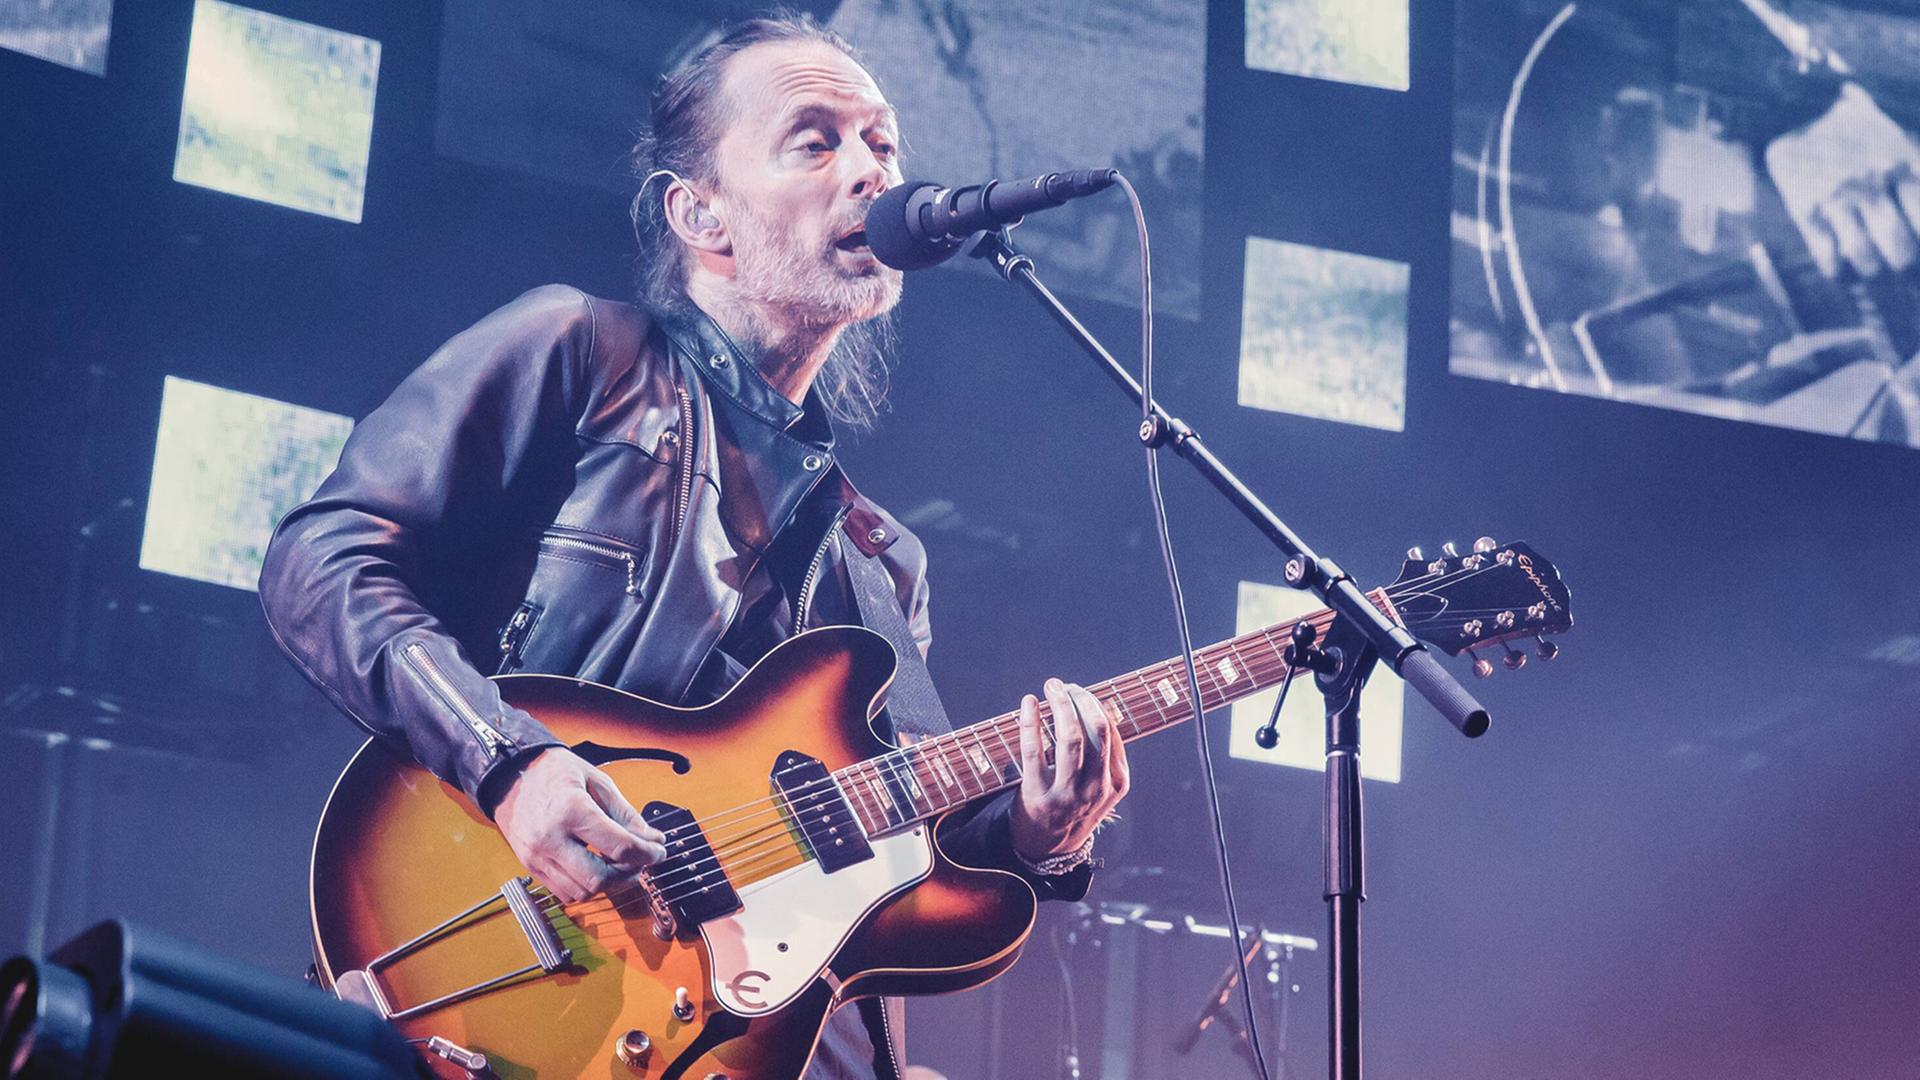 Thom Yorke bei einem Konzert mit seiner Band Radiohead in Paris am 23. Mai 2016 .